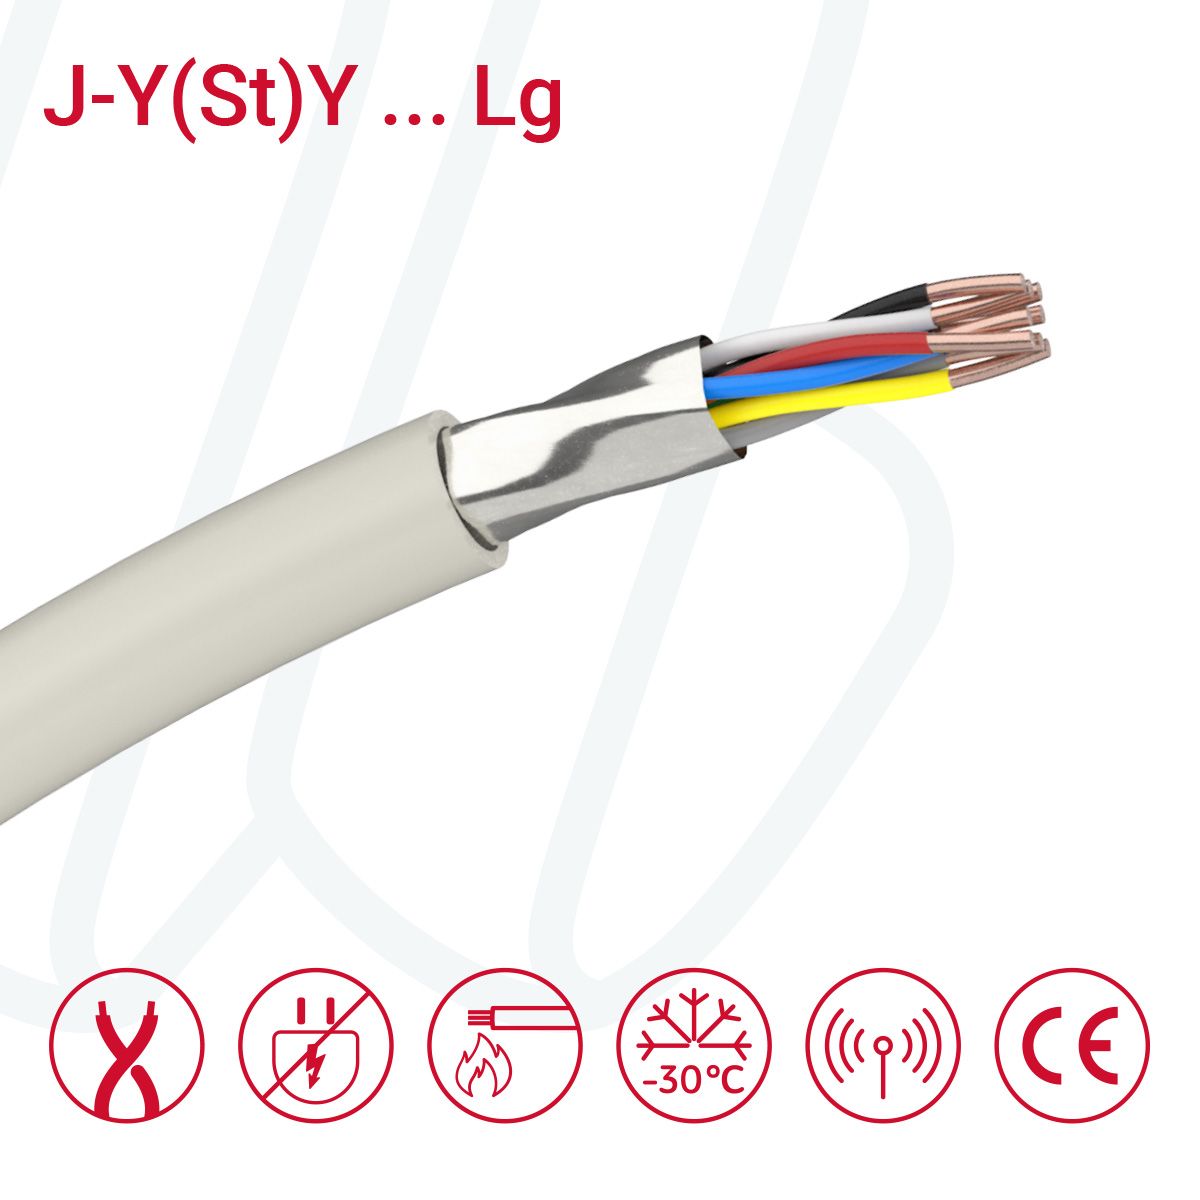 Кабель J-Y(St)Y…LG 04X2X0.8 (0.52мм²) сірий, 08, 0.52